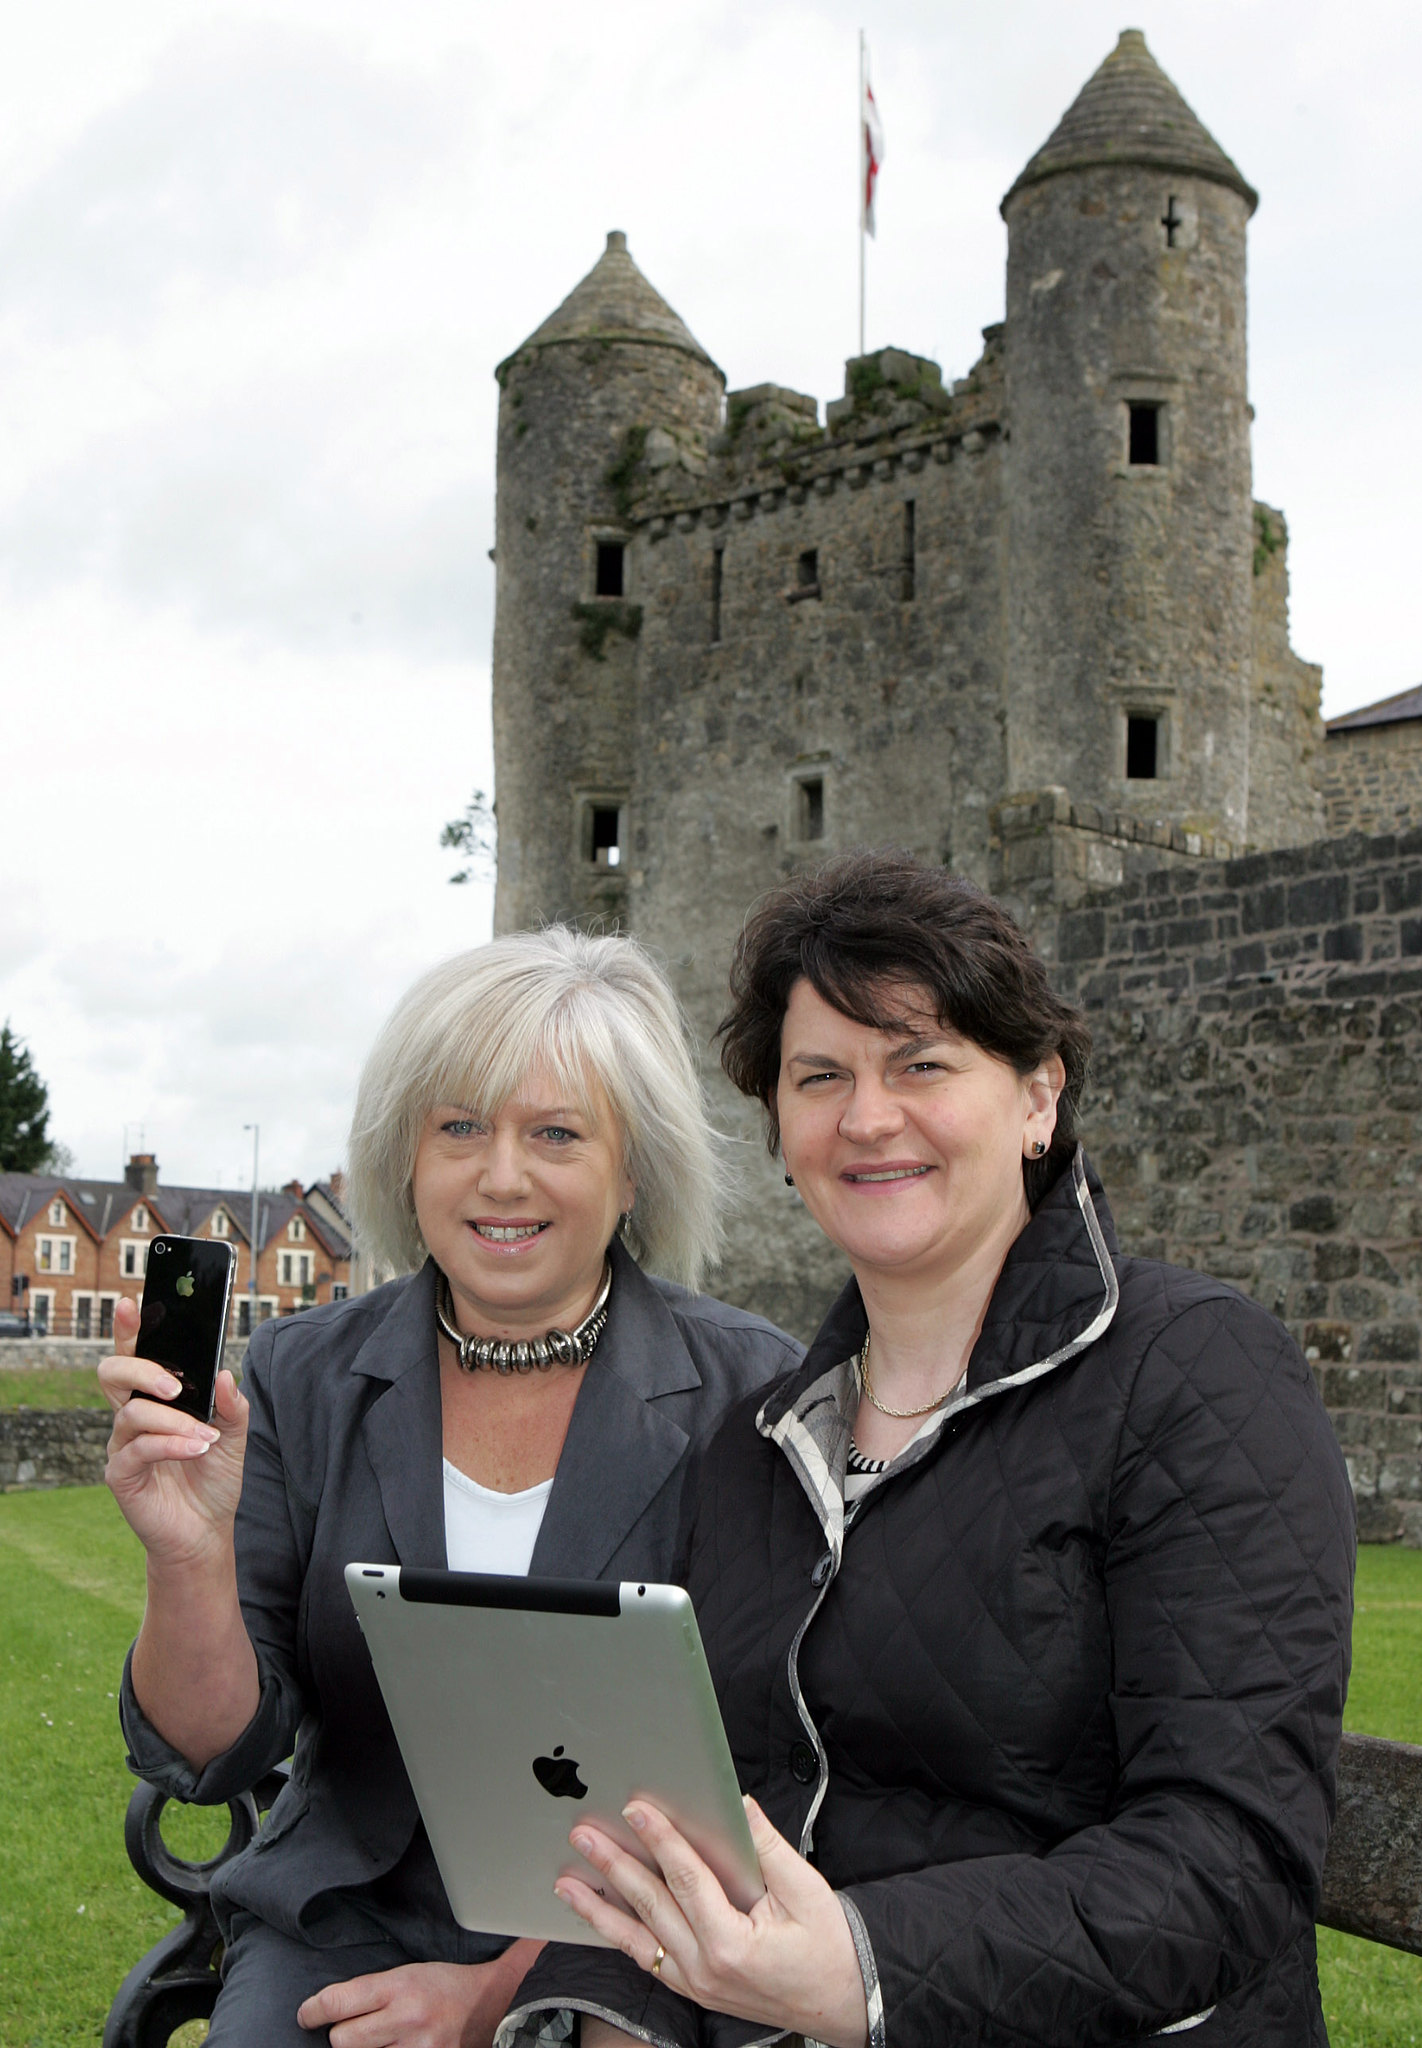 Dos mujeres sentadas frente a un viejo castillo. Uno sostiene un iPhone, el otro un iPad.